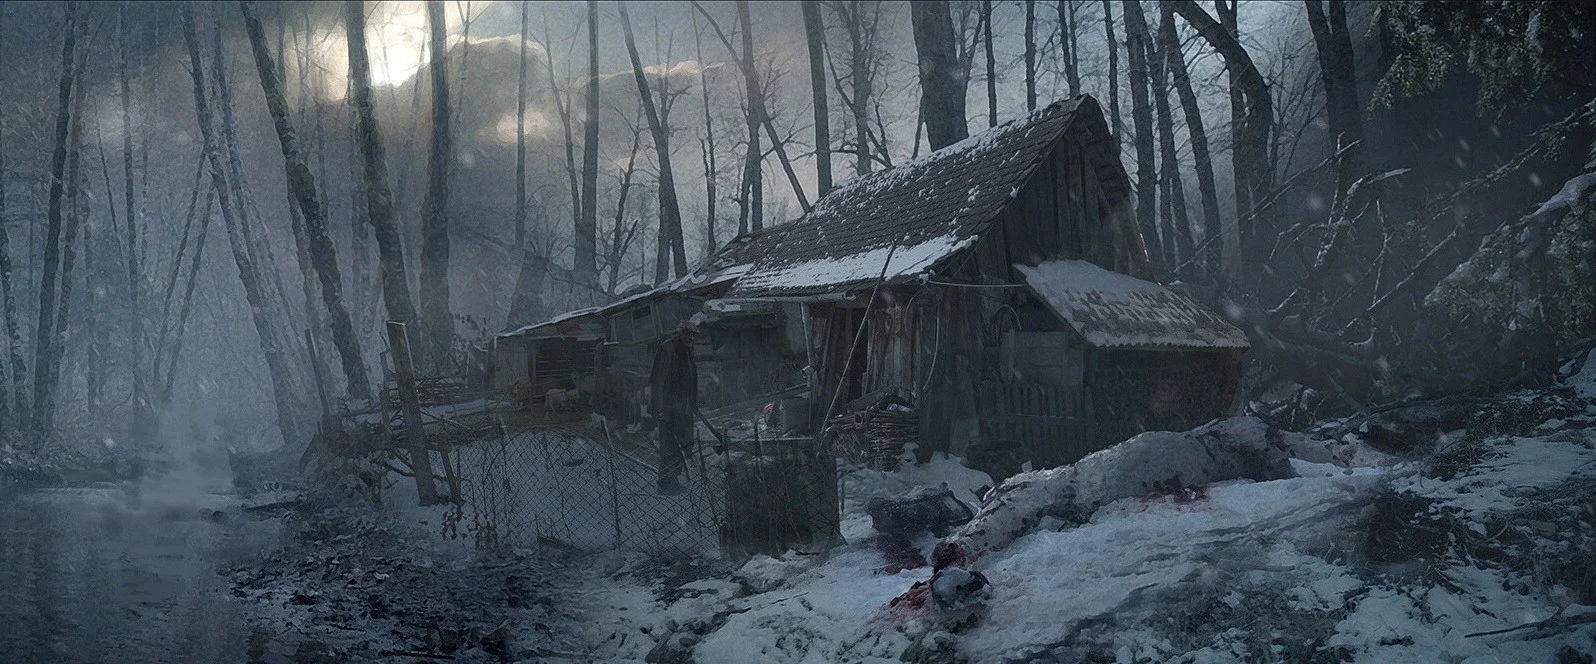 Психологический хоррор и кульминация серии — свежие детали Resident Evil Village - фото 3